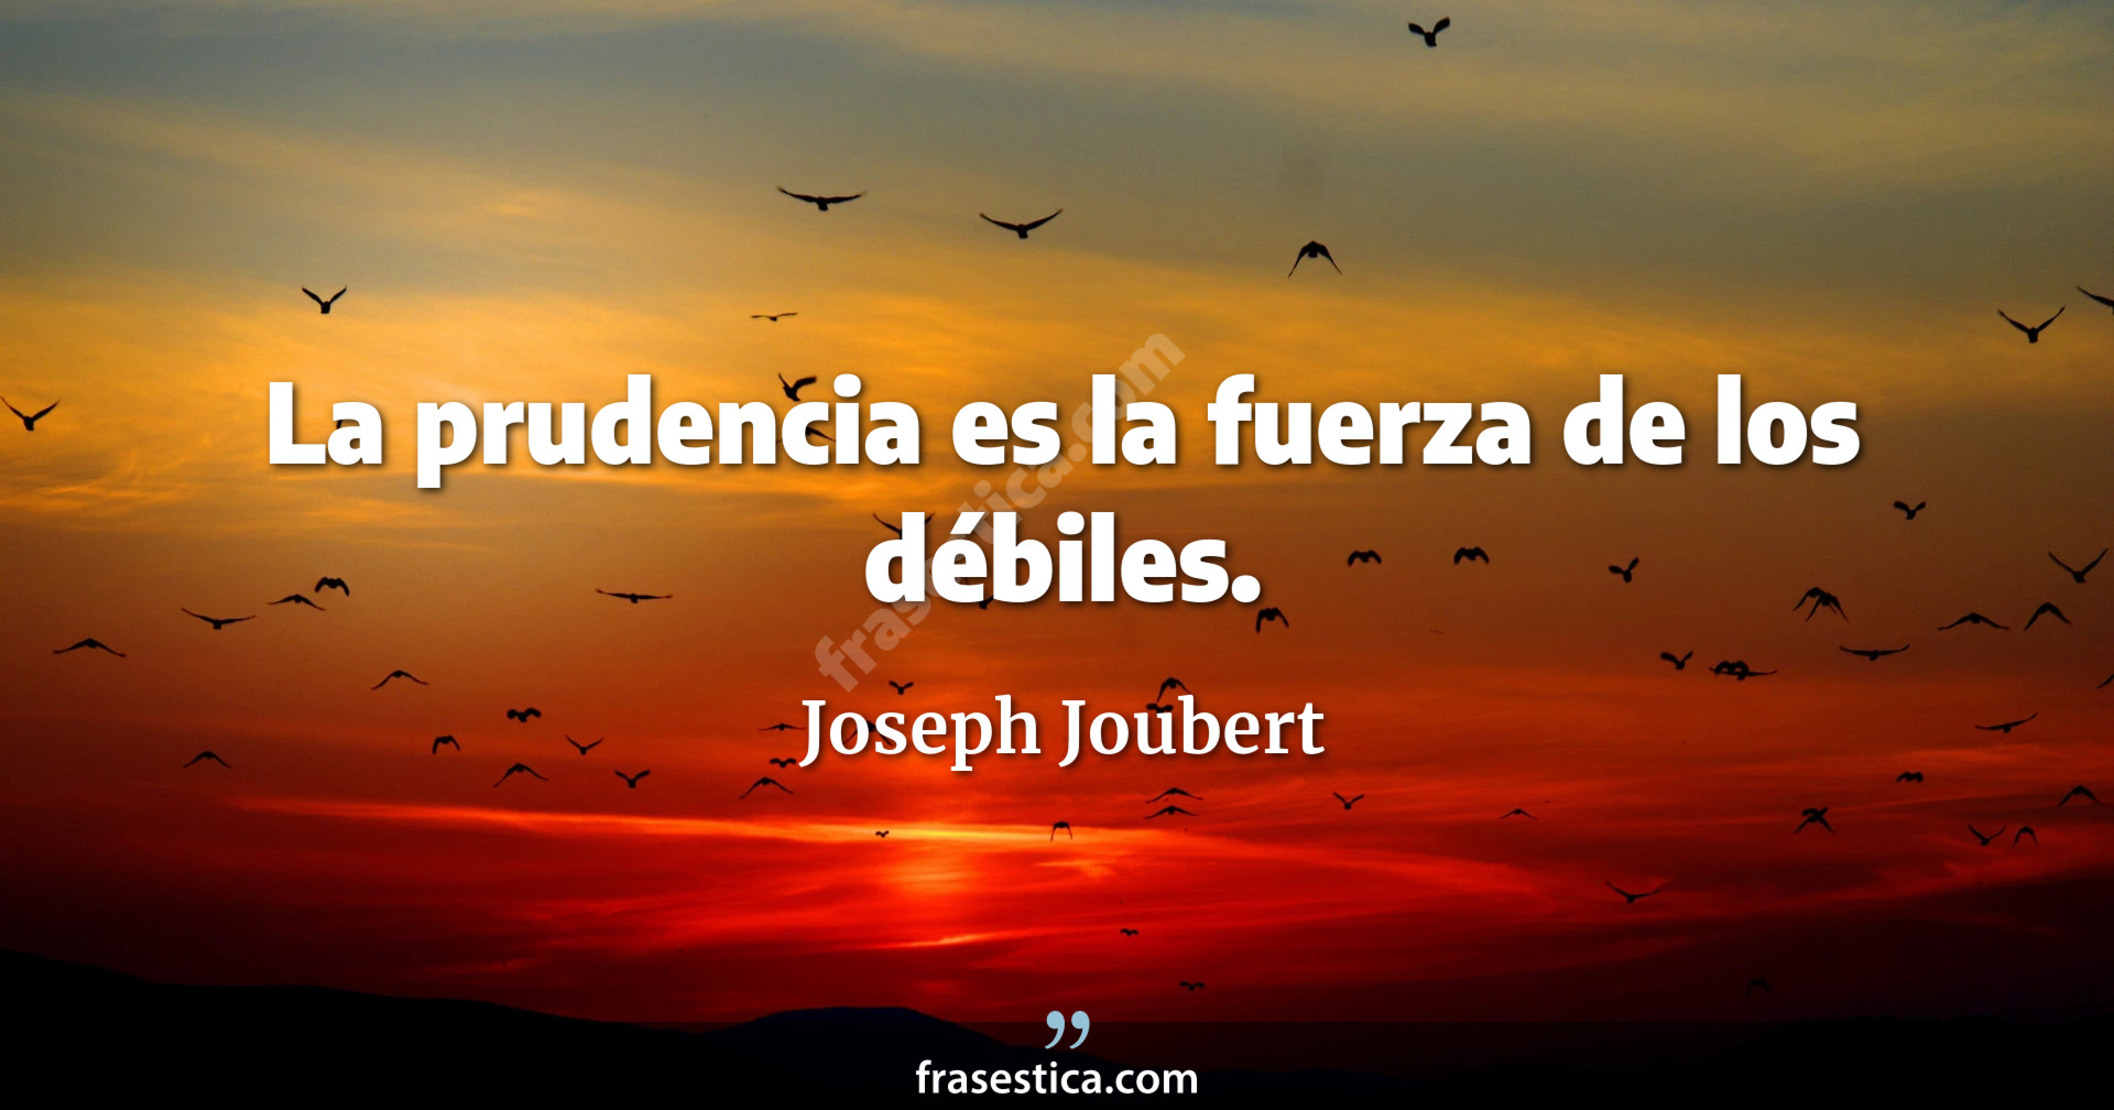 La prudencia es la fuerza de los débiles. - Joseph Joubert